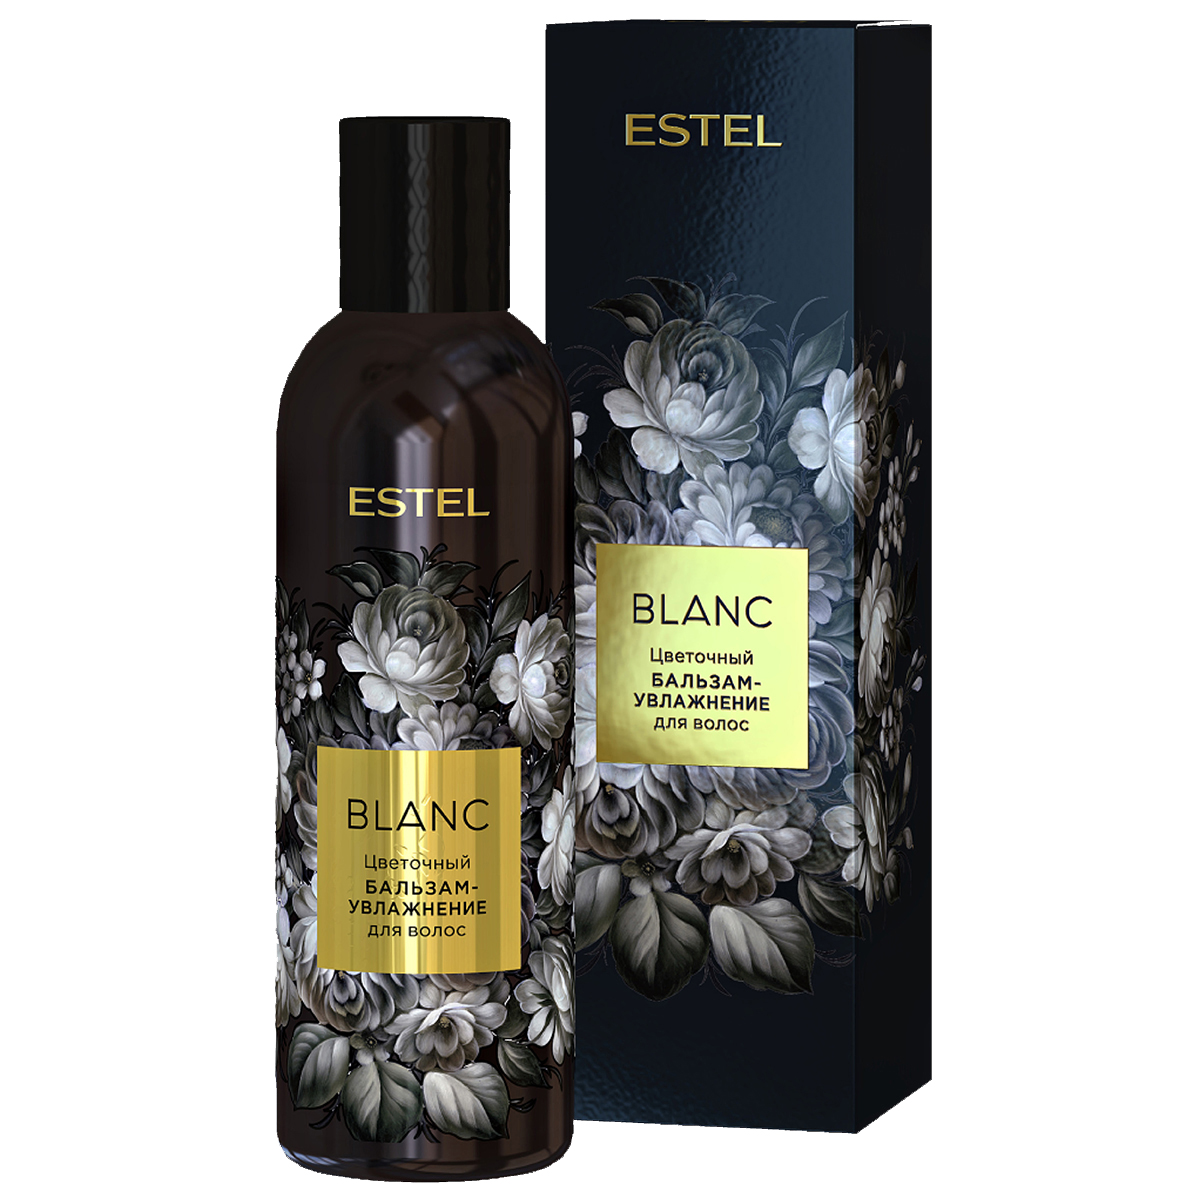 Цветочный бальзам-увлажнение BLANC для питания и плотности волос, 200 мл бальзам для губ крымские сказки шоколадка с натуральным конкретом ванили 7 г